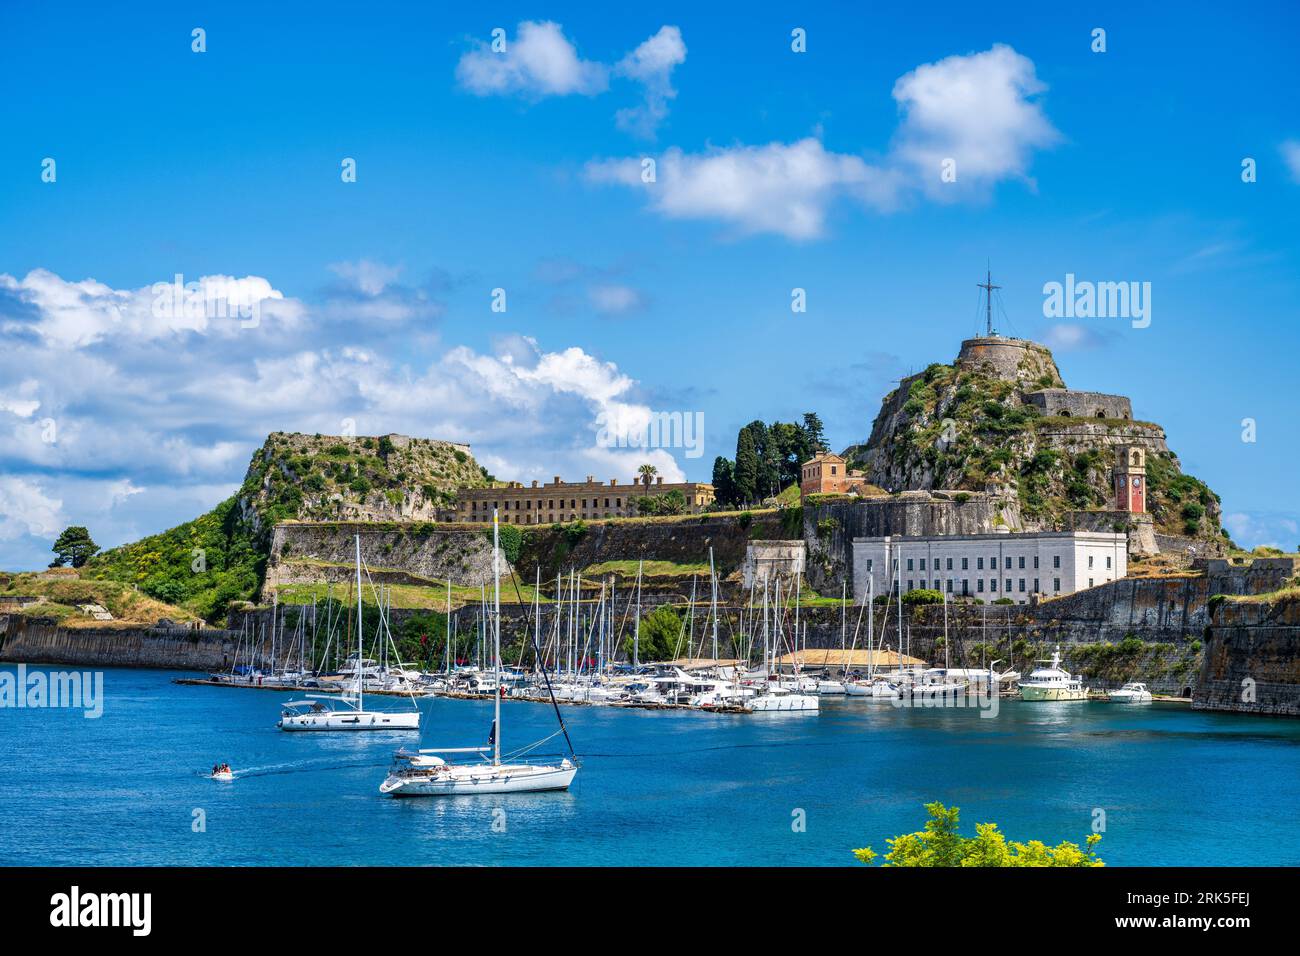 Blick auf die Mandraki Marina, ein geschützter Ankerplatz an der alten Festung von Korfu, in der Altstadt von Korfu, Insel Korfu, Ionische Inseln, Griechenland Stockfoto